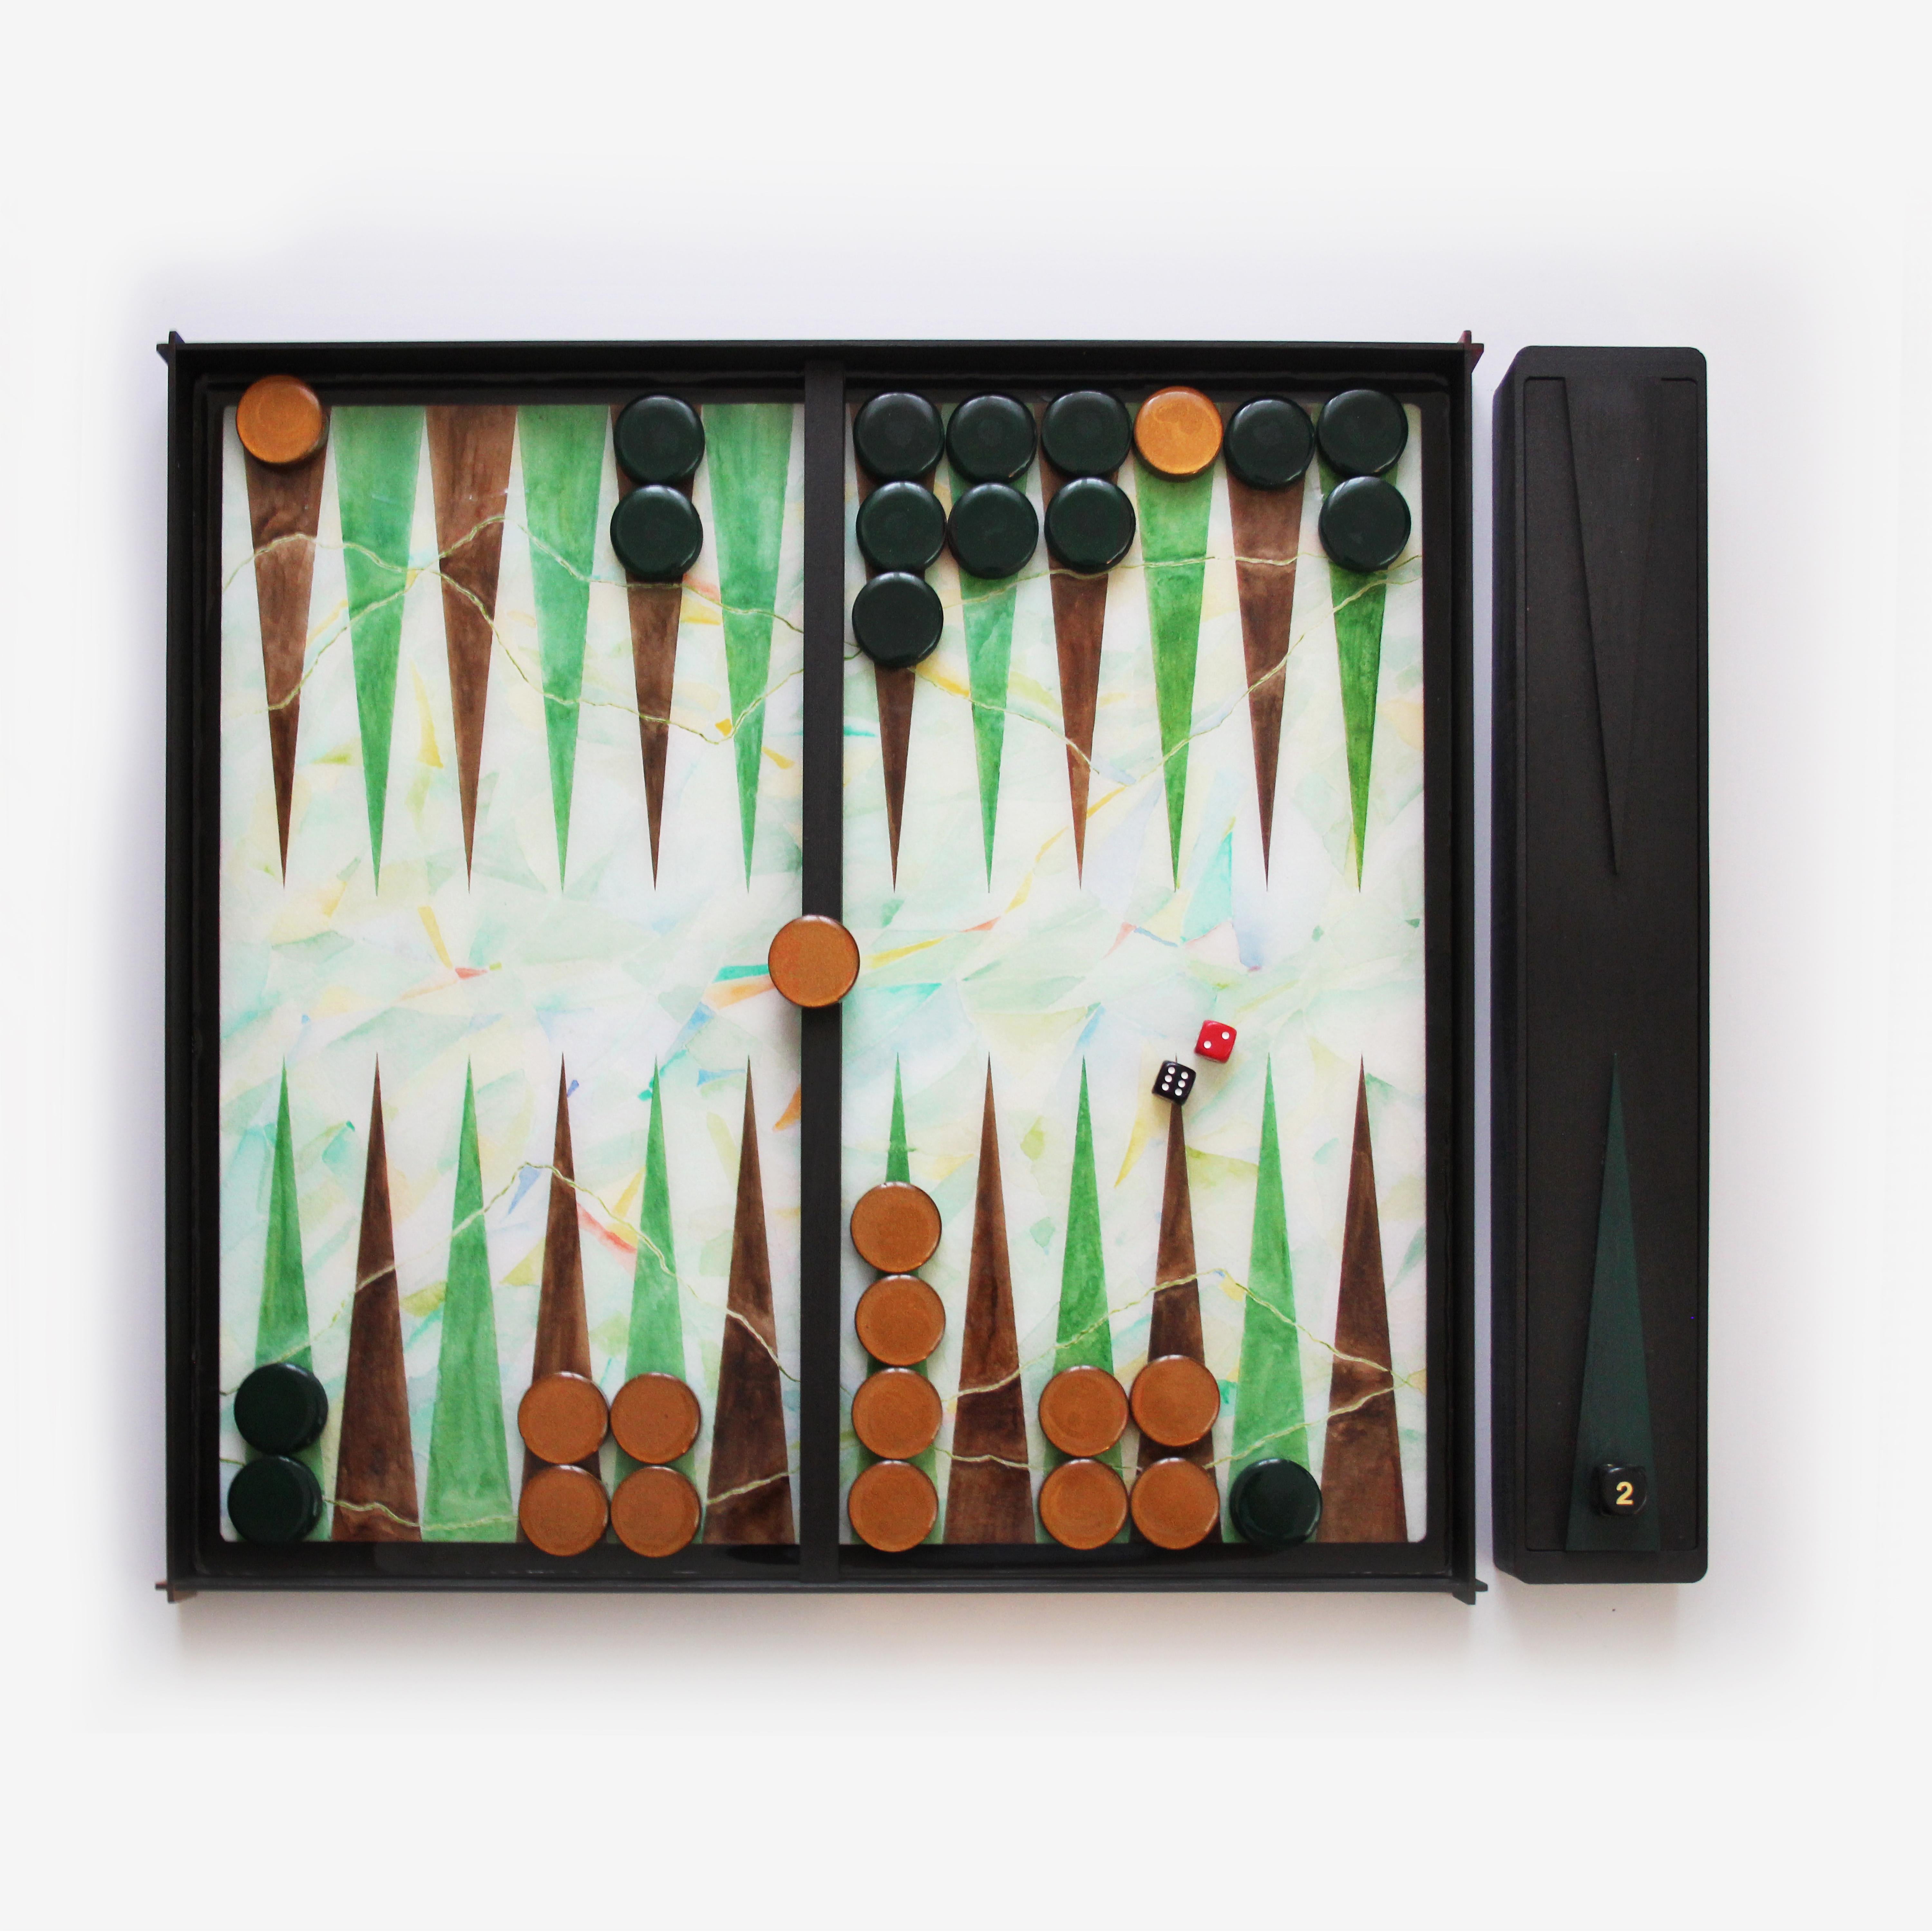 La planche de backgammon est une collection limitée (100 pièces) faite à la main et conçue par la jeune milanaise Valeria Molinari pour Dilmos Edizioni. Le projet, composé de quatre planches inspirées des éléments de l'eau, de l'air, du feu et de la